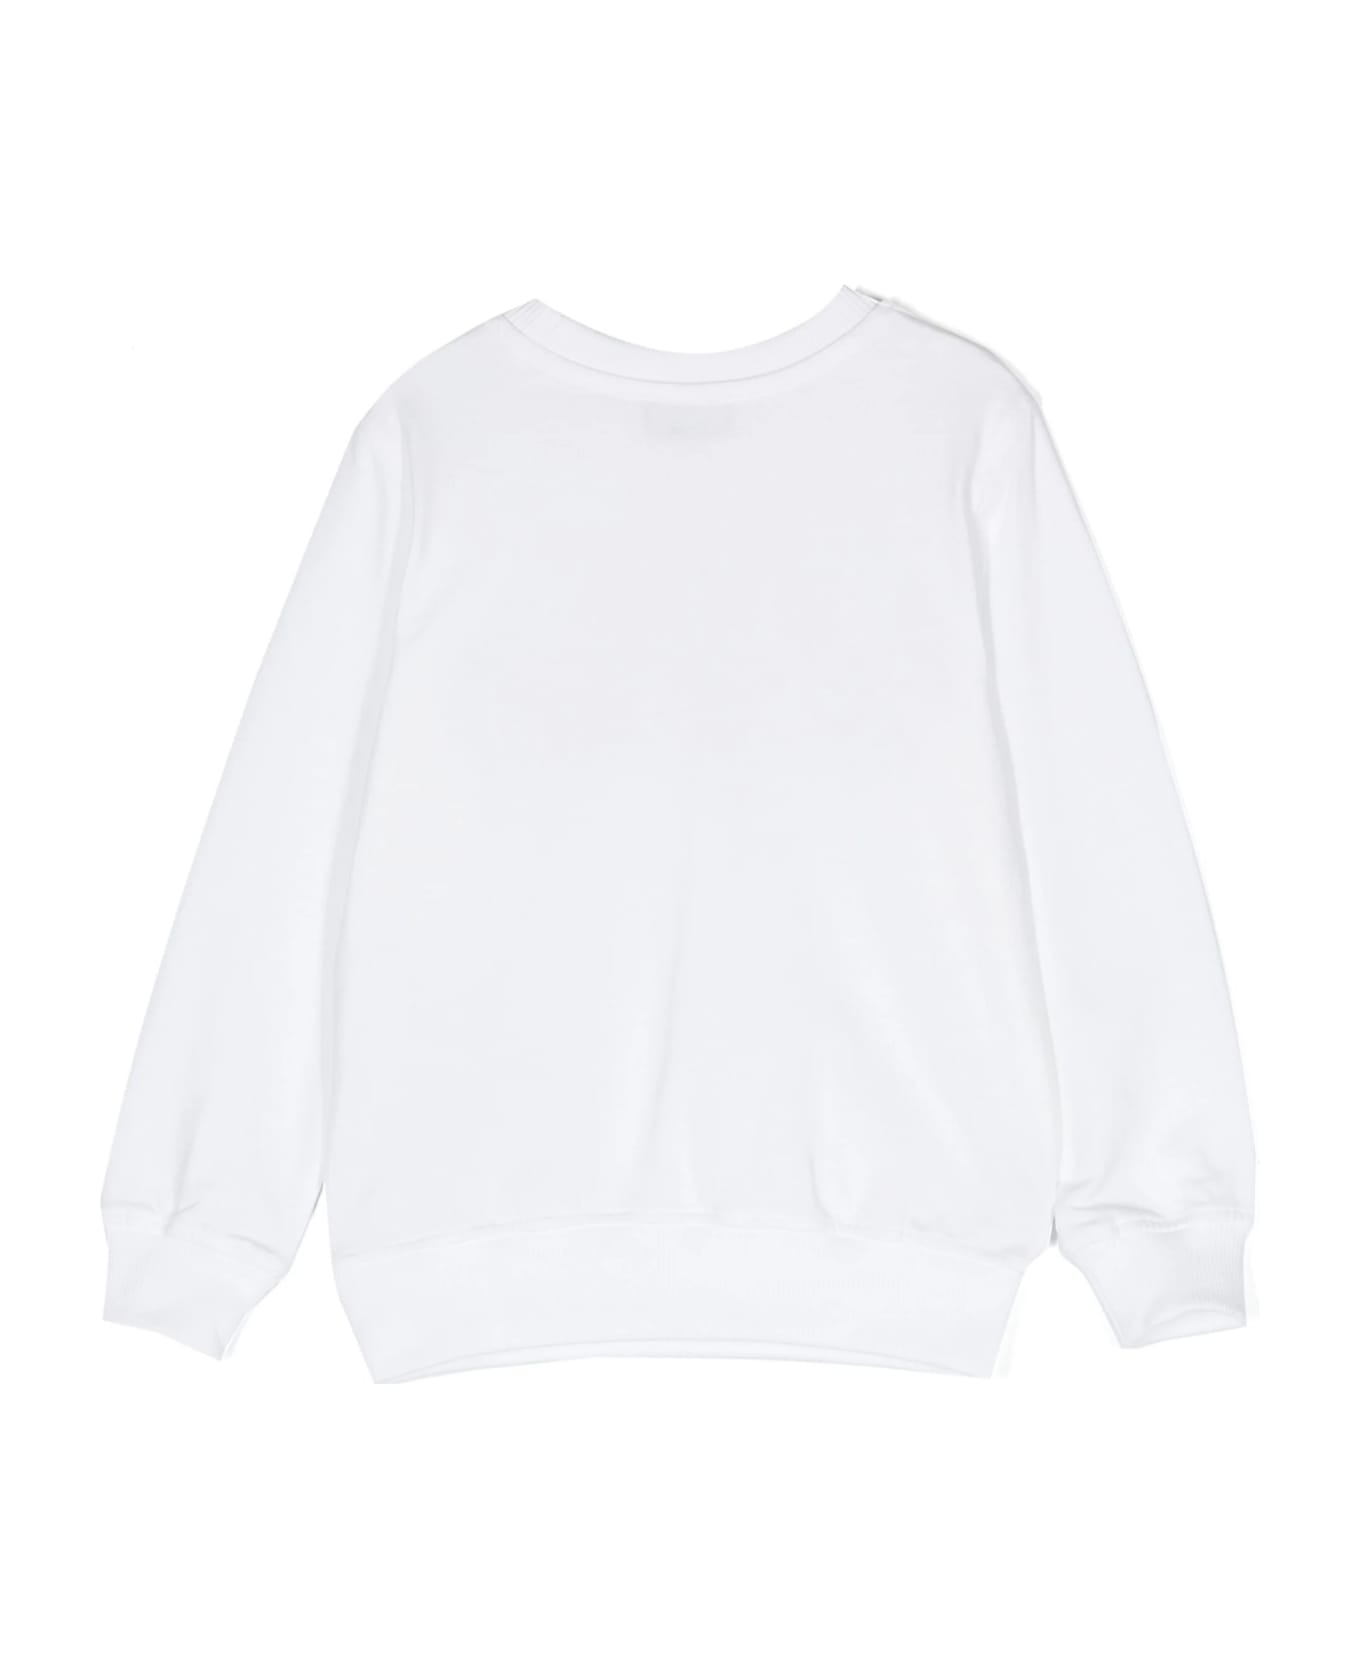 Moschino White Sweatshirt With Moschino Teddy Friends Print - White ニットウェア＆スウェットシャツ